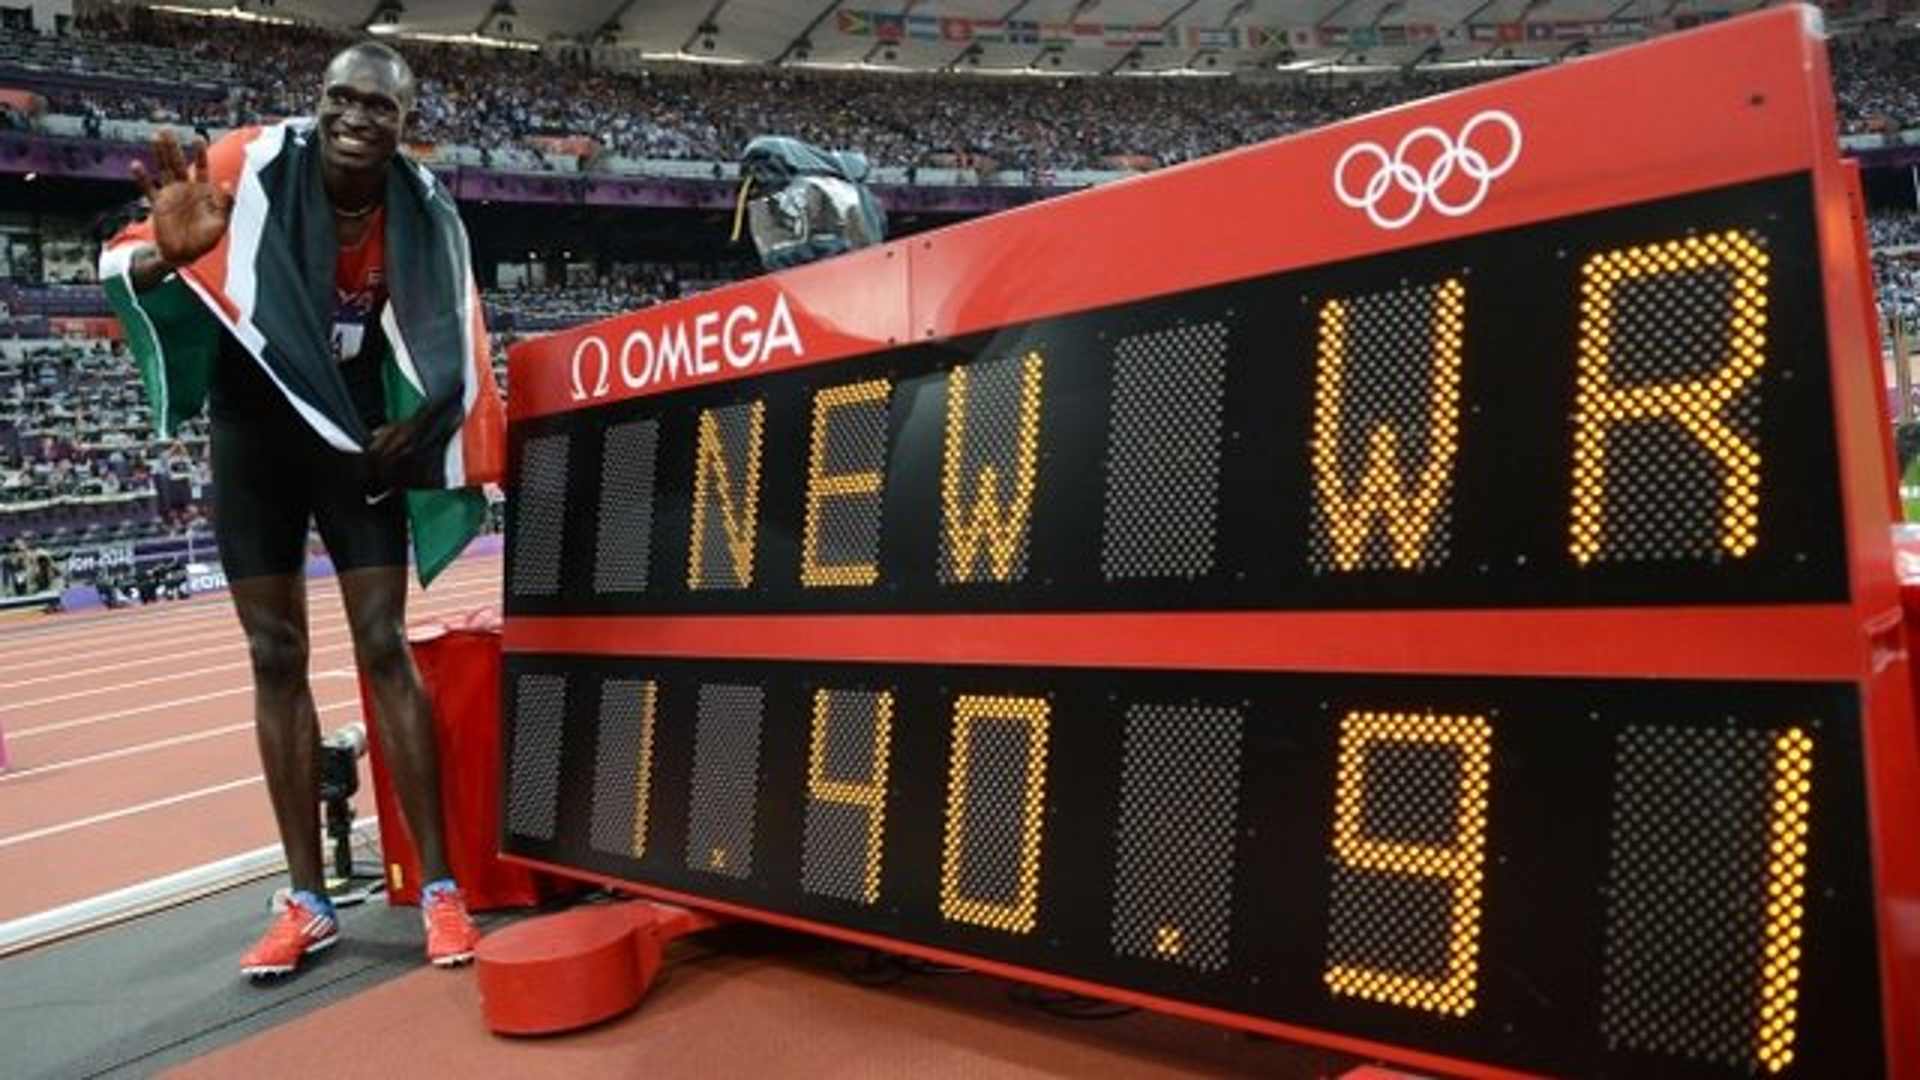 David Rudisha after setting the world record at the London Olympics 2012 (Image Credits- Facebook/ David Rudisha)